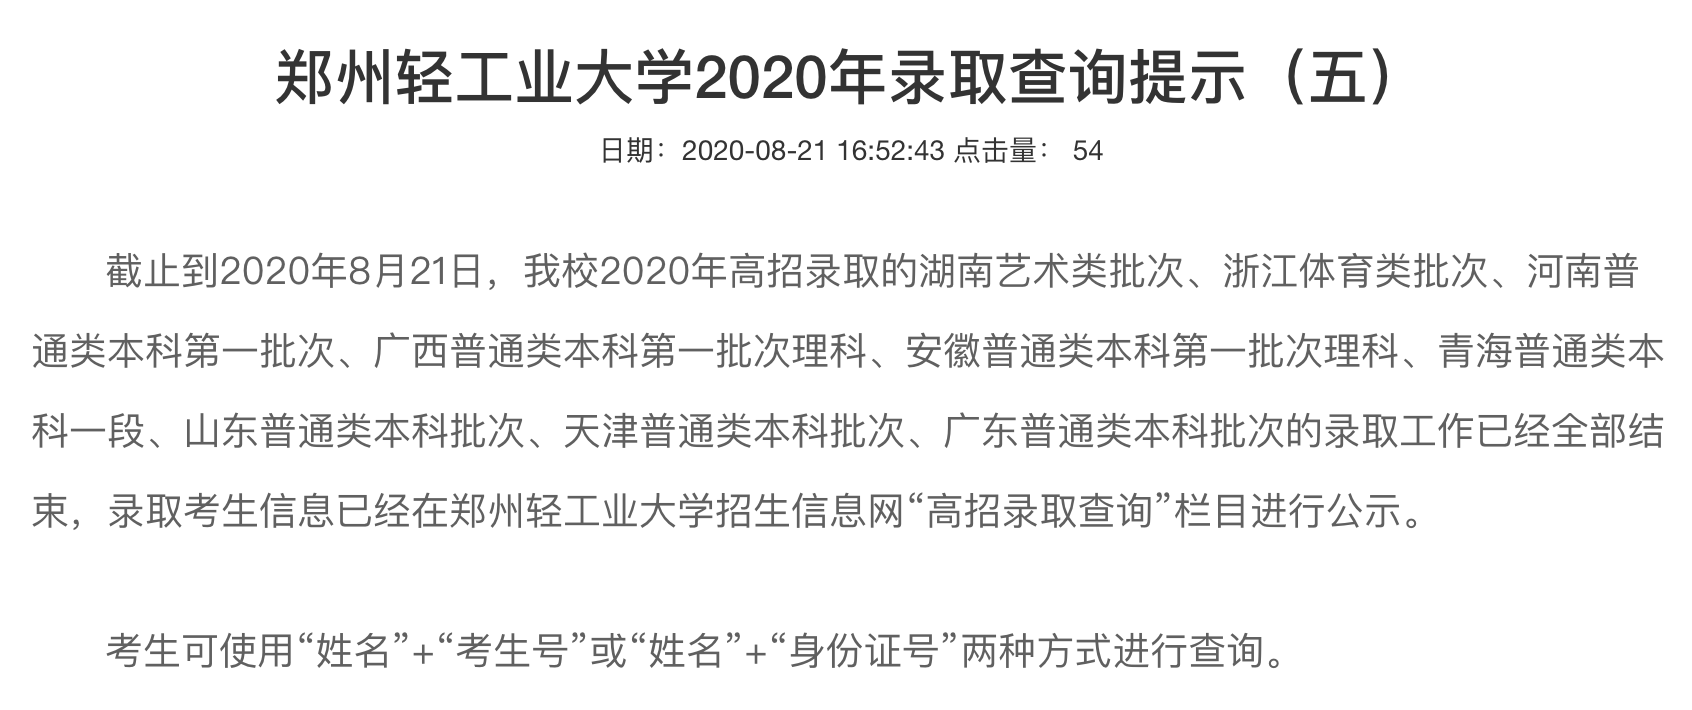 郑州轻工业大学2020年高考录取查询湖南、浙江、河南等批次录取查询开通